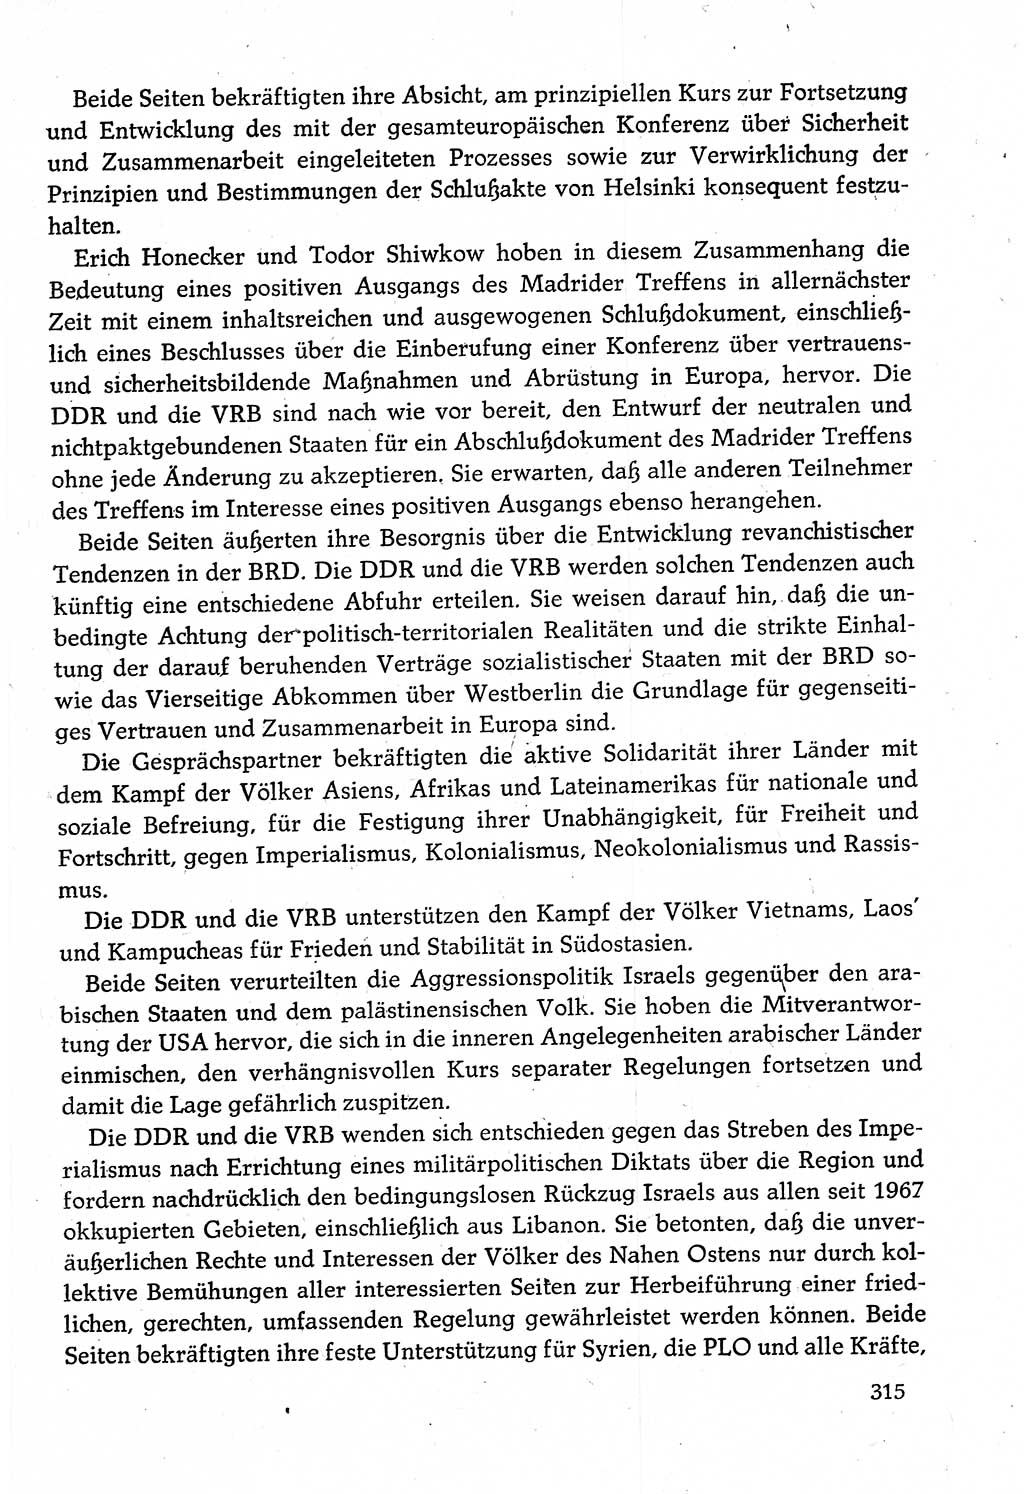 Dokumente der Sozialistischen Einheitspartei Deutschlands (SED) [Deutsche Demokratische Republik (DDR)] 1982-1983, Seite 315 (Dok. SED DDR 1982-1983, S. 315)